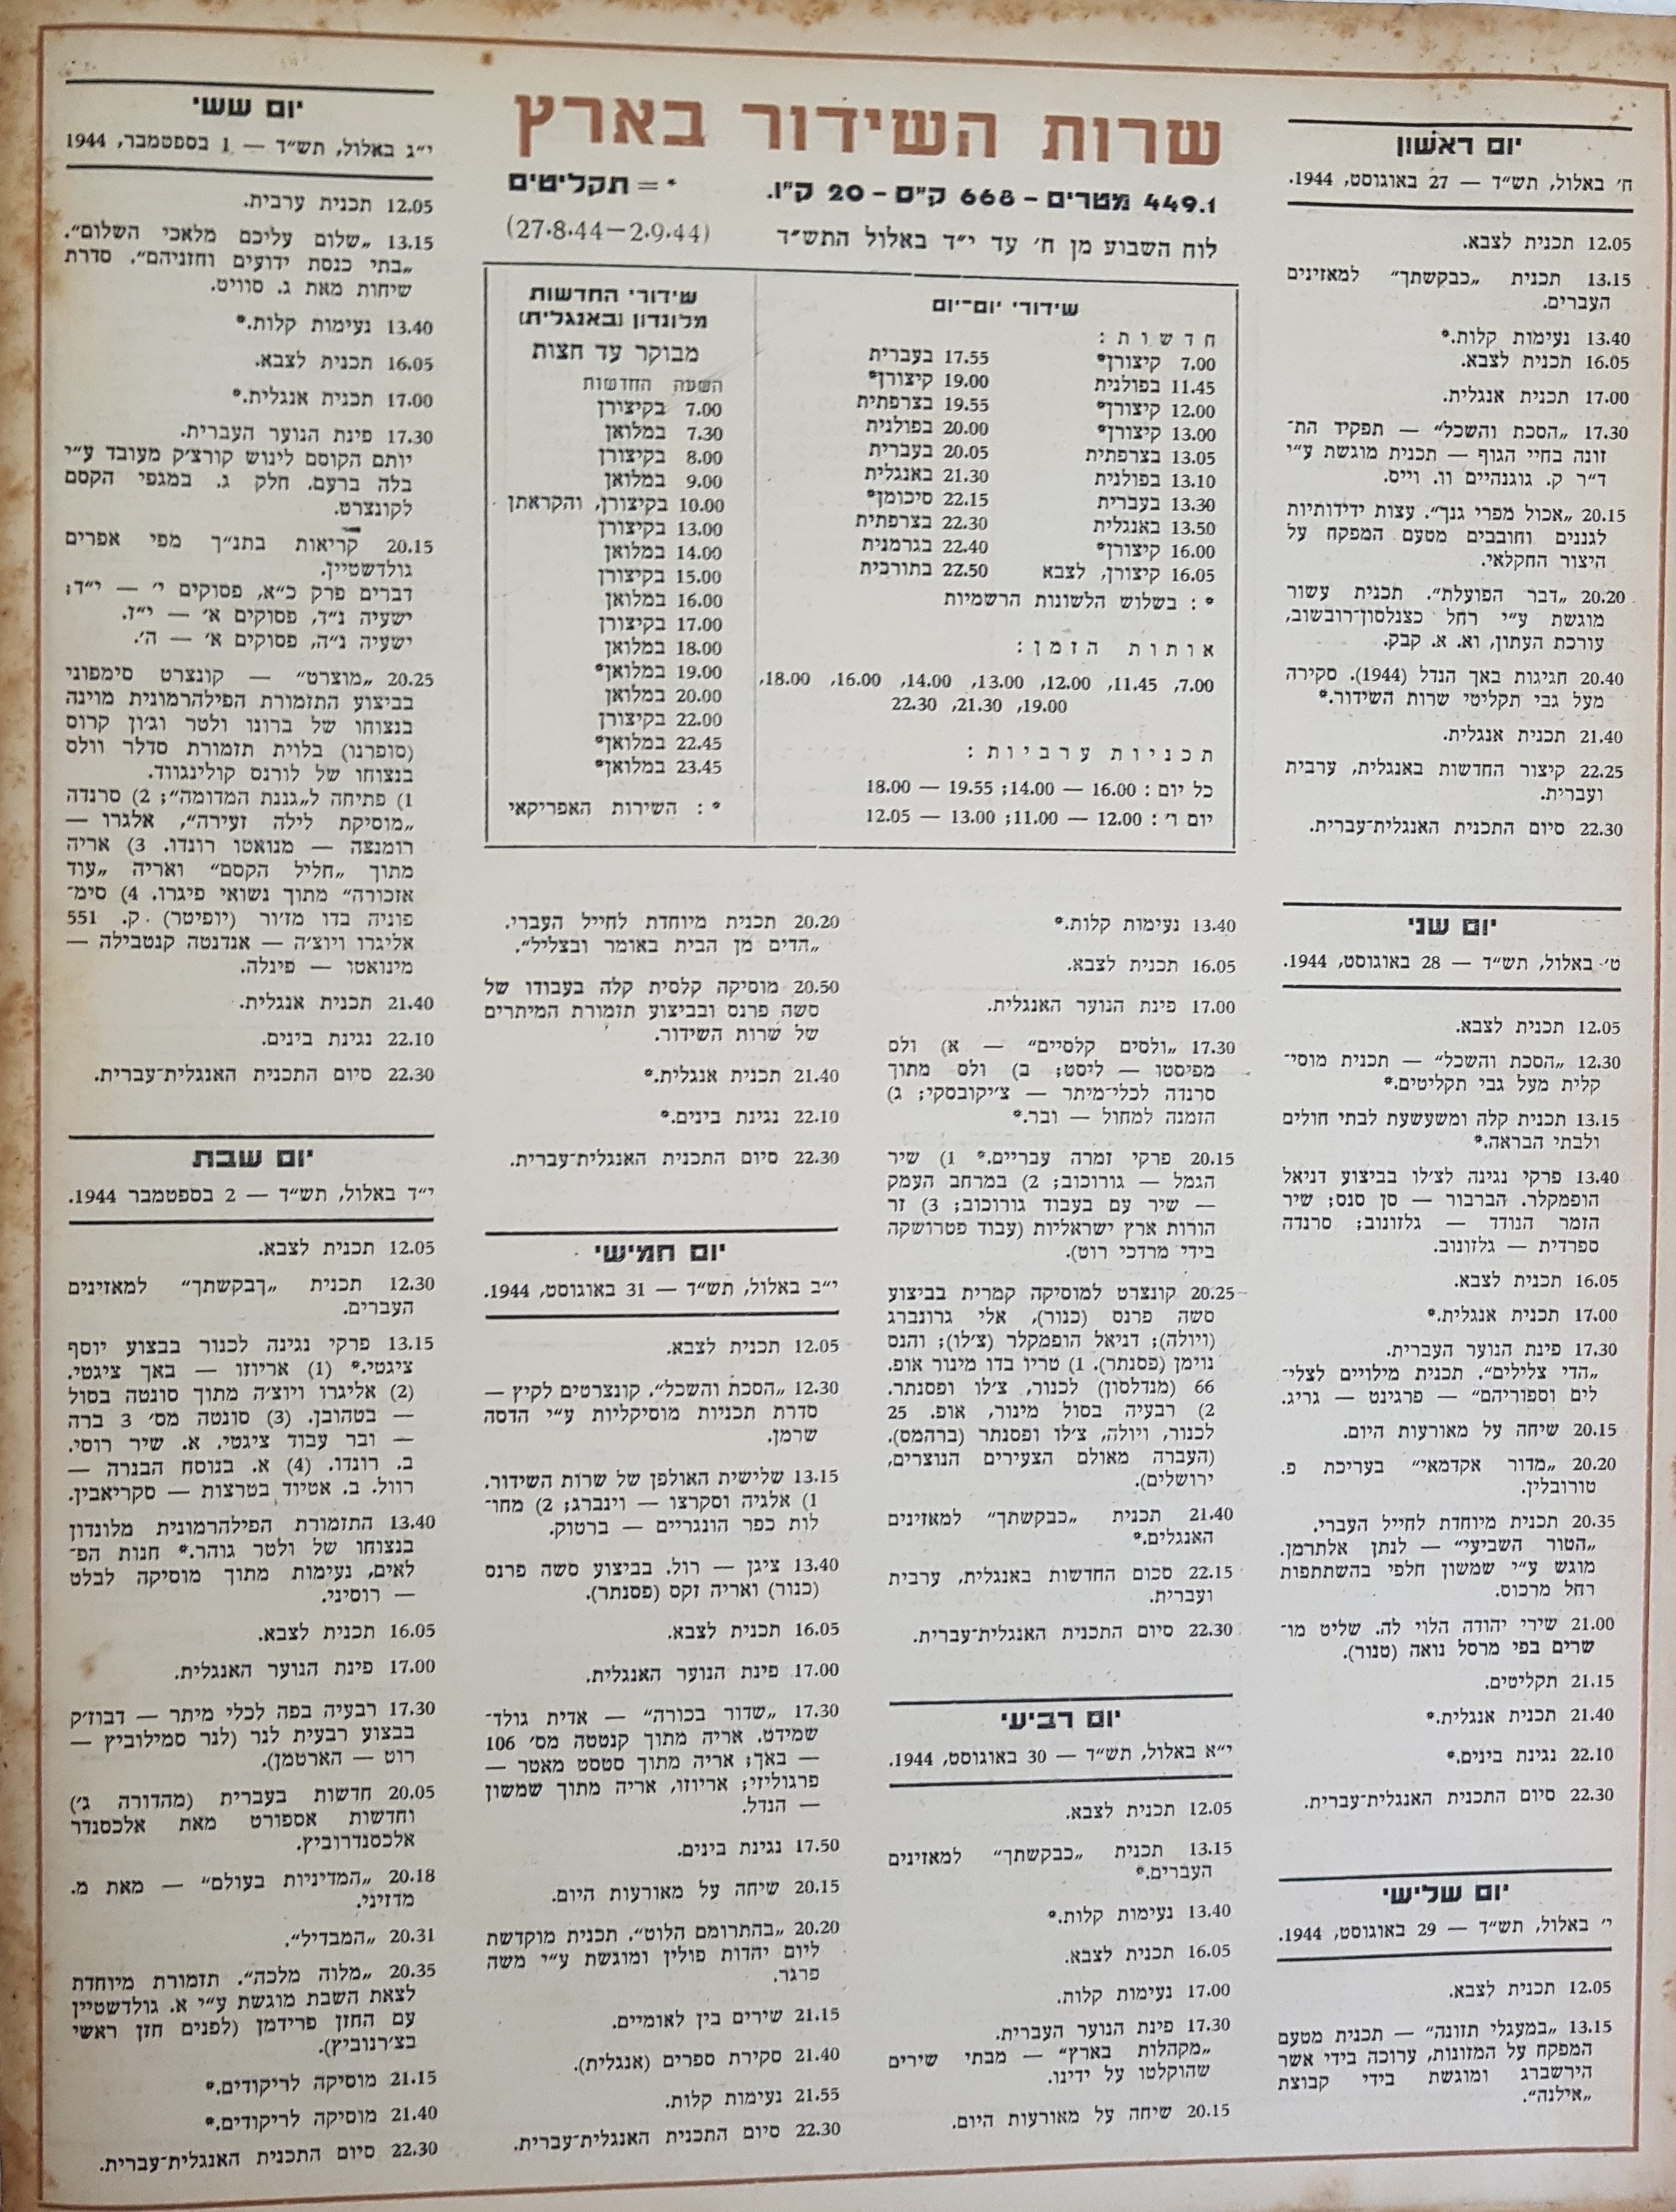 Radio Schedule:August 27, 1944 - September 2, 1944